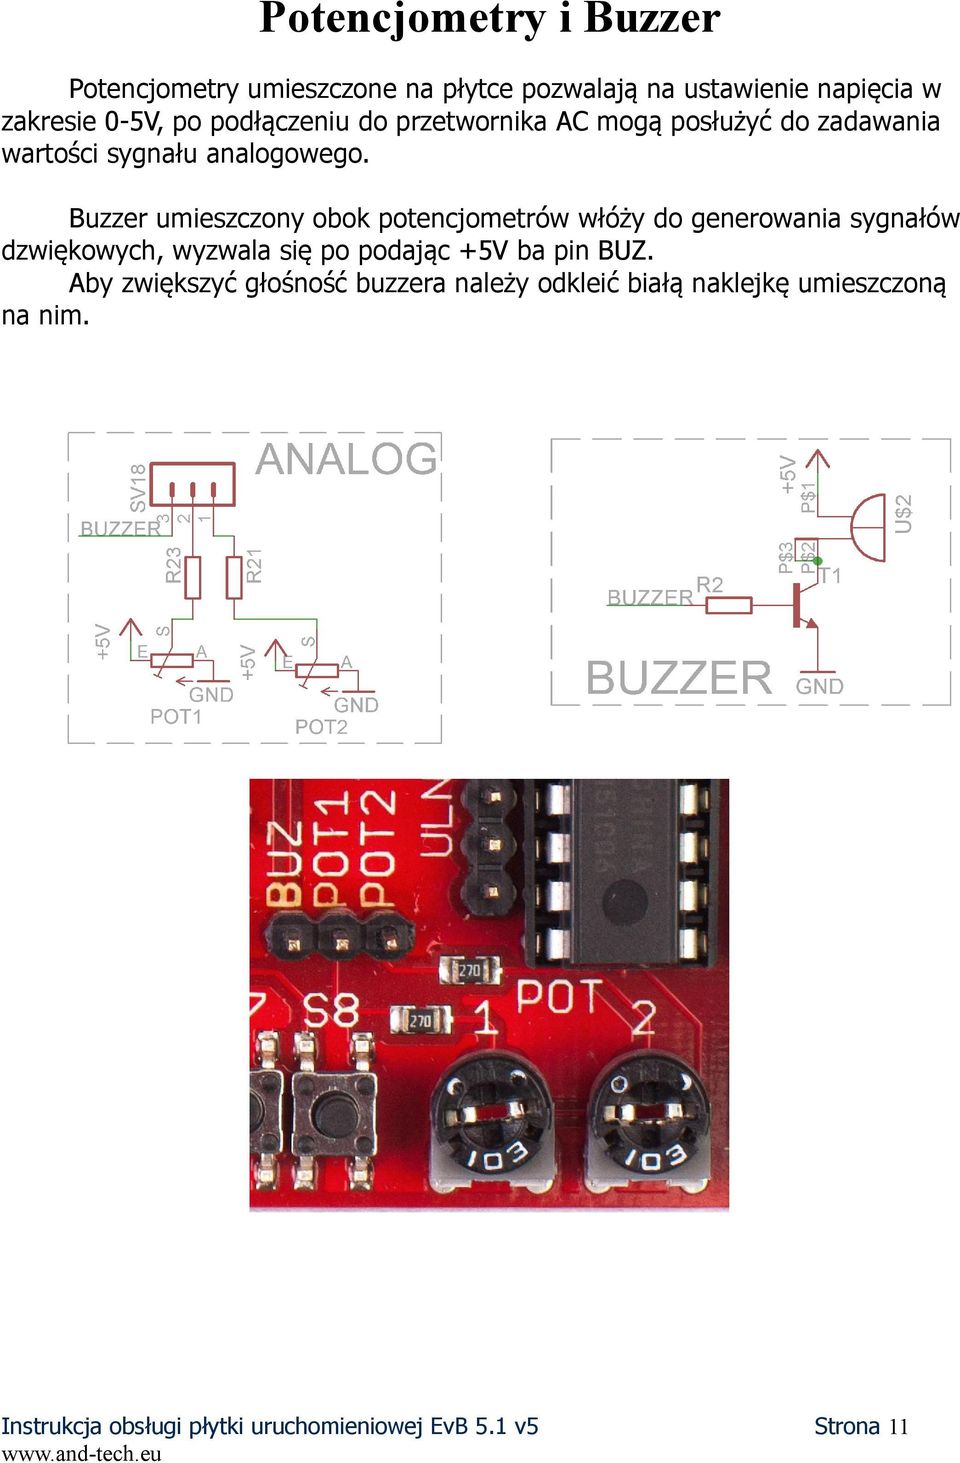 Buzzer umieszczony obok potencjometrów włóży do generowania sygnałów dzwiękowych, wyzwala się po